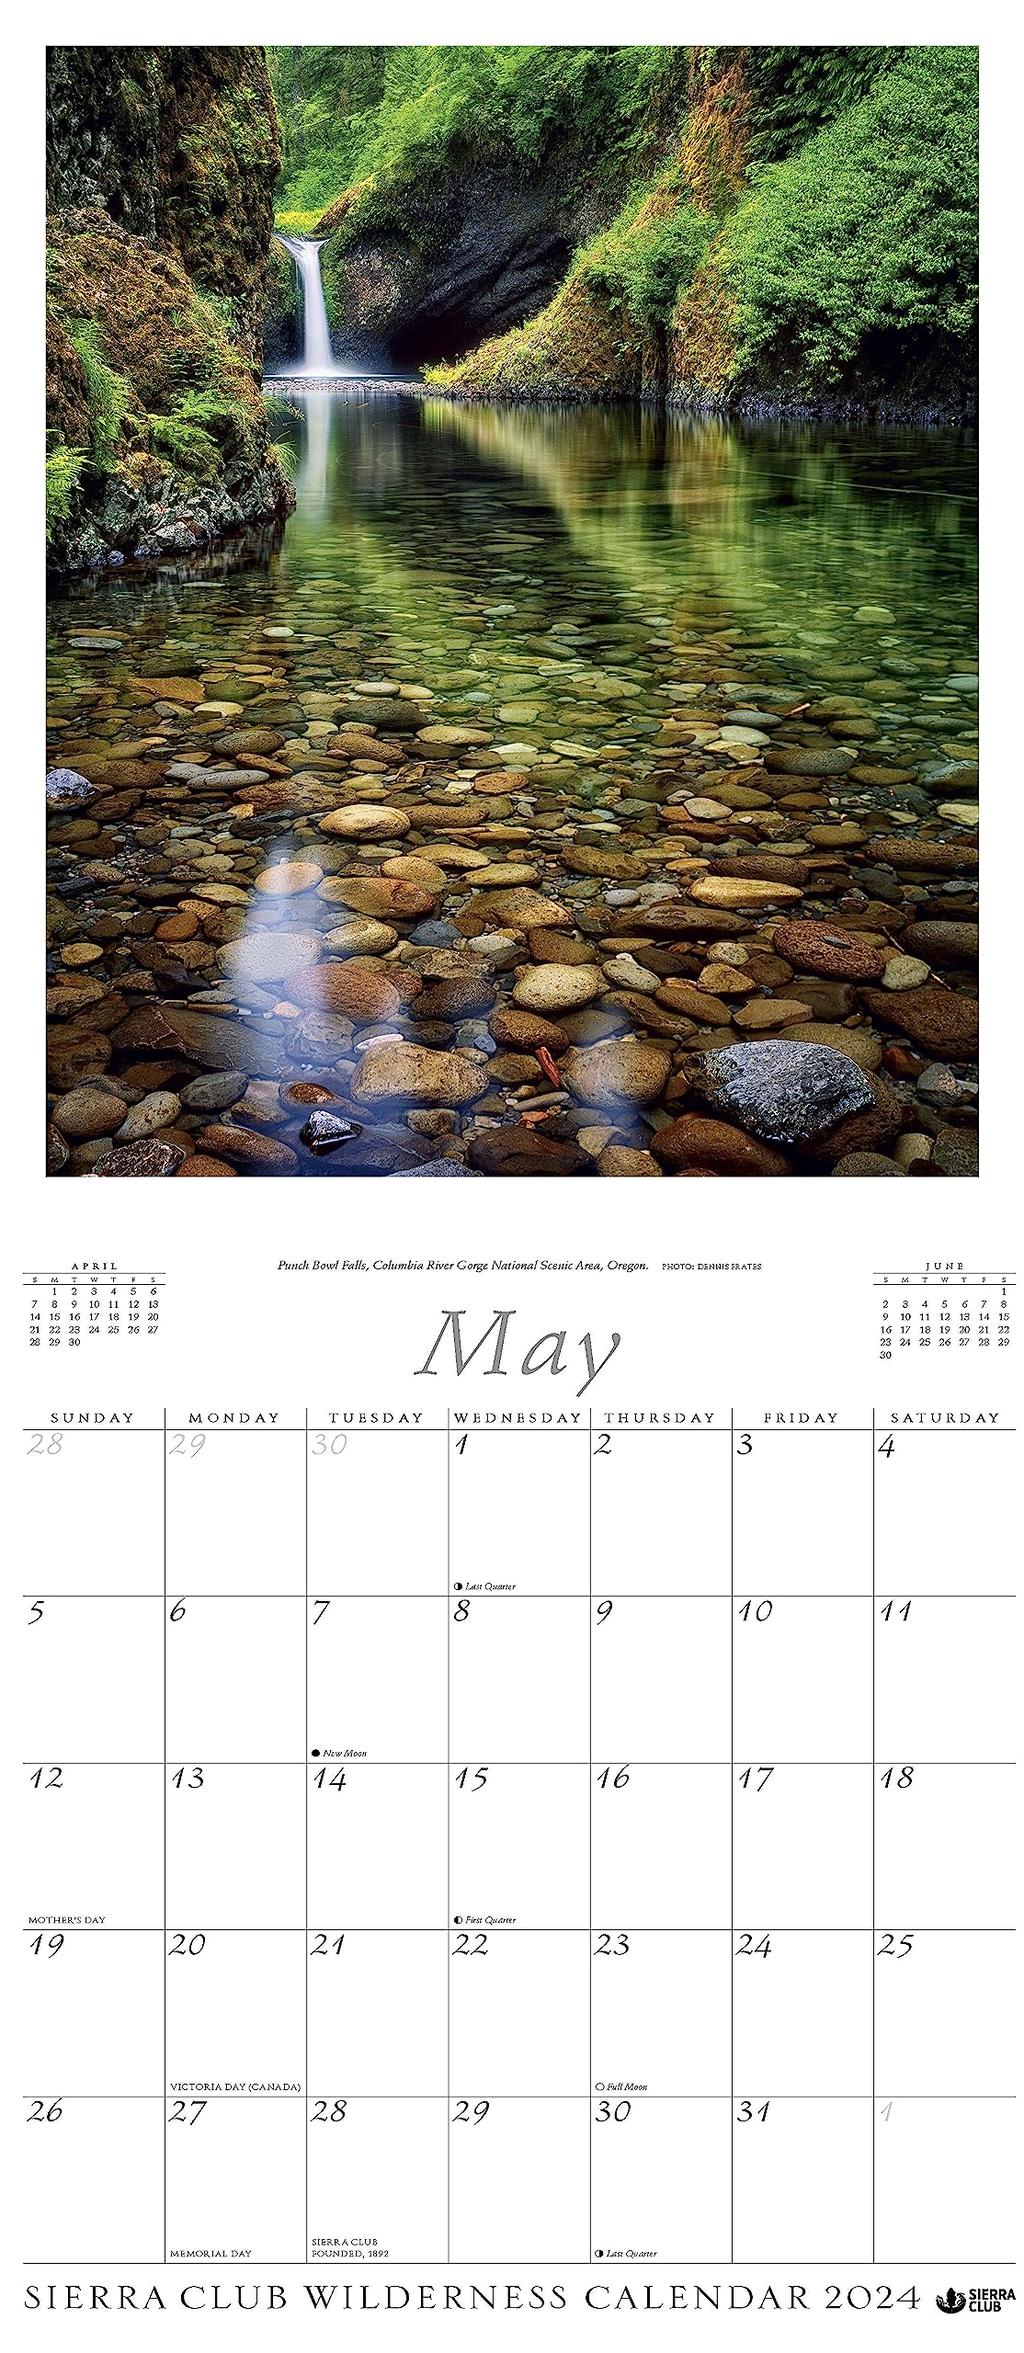 Sierra Club Wilderness 2024 Wall Calendar May